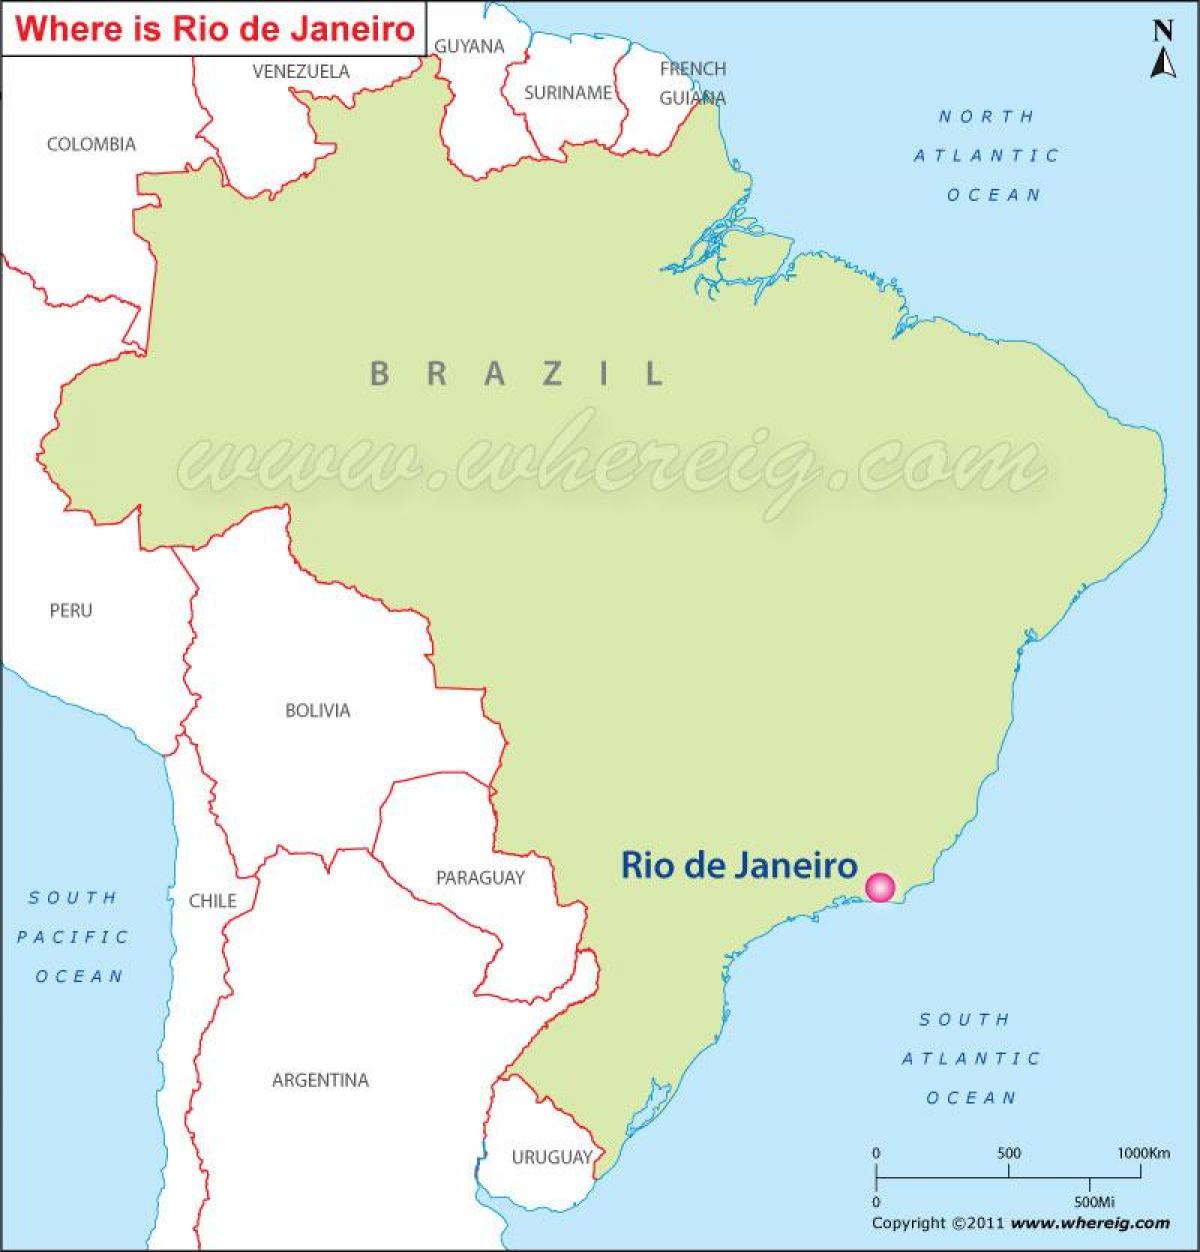 Térkép Rio de Janeiro a Brazília